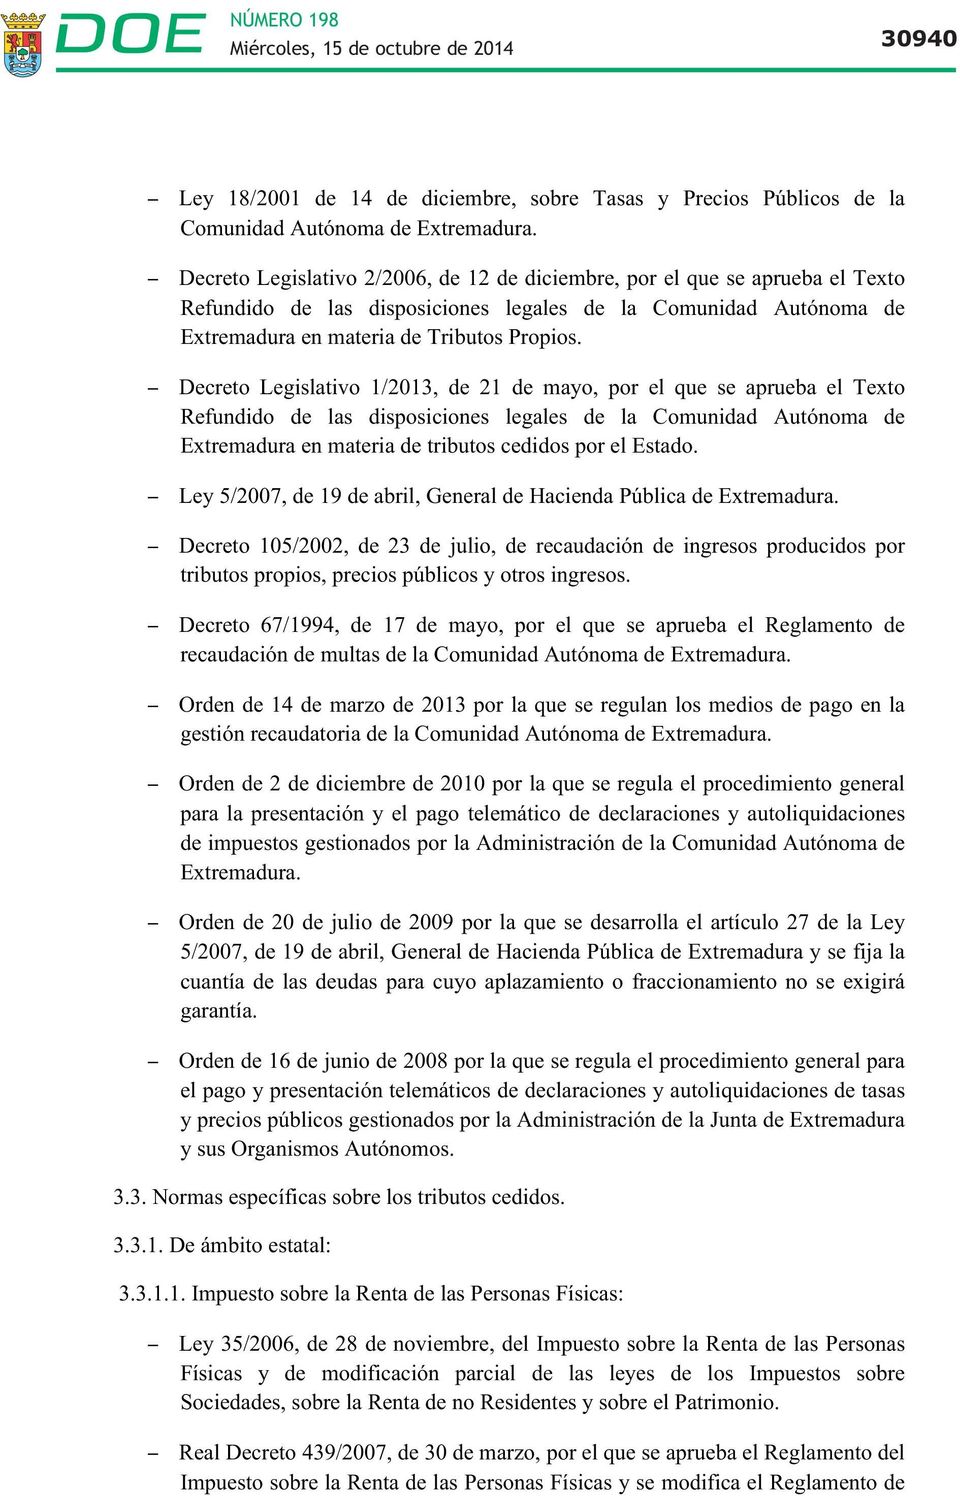 Decreto Legislativo 1/2013, de 21 de mayo, por el que se aprueba el Texto Refundido de las disposiciones legales de la Comunidad Autónoma de Extremadura en materia de tributos cedidos por el Estado.